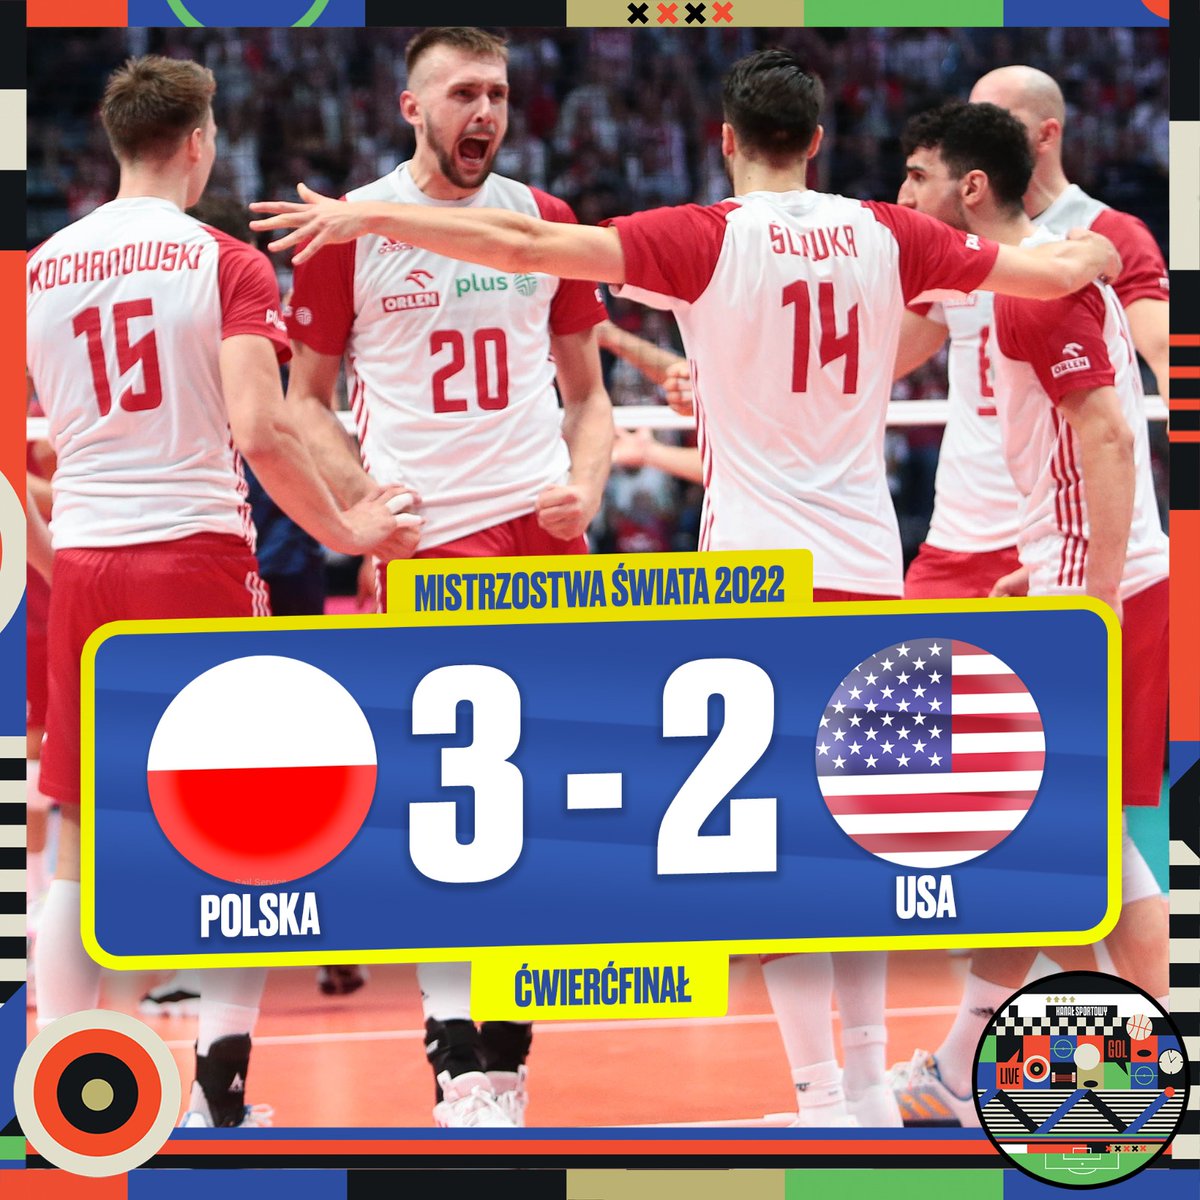 Brawo Polska! 🇵🇱 To nie było łatwe spotkanie, ale ostatecznie górą nasi ✊ Polska vs USA 3:2 Biało-czerwoni zagrają w półfinale mistrzostw świata z Brazylią 🇧🇷